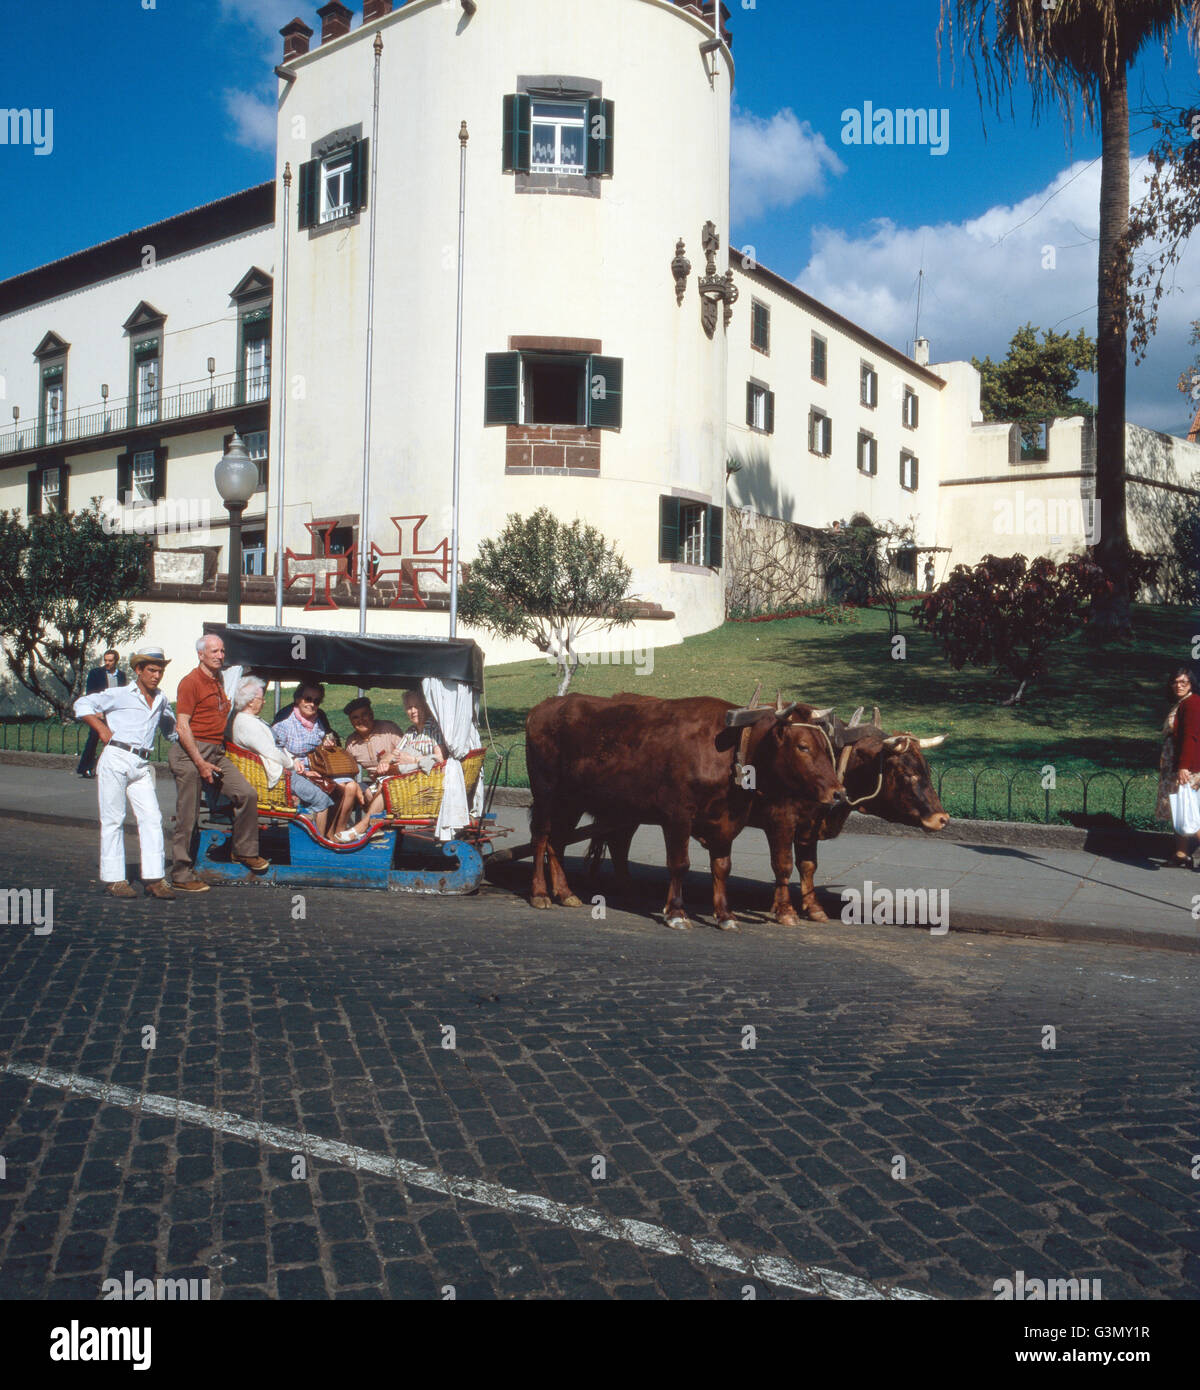 Eine Fahrt Mit Dem Traditionellen Ochsenschlitten Durch Funchal, Madeira, Portugal 1980. Ein Radteams mit den traditionellen Ochsen gezogen Schlitten durch die Stadt Funchal, Madeira, Portugal 1980. Stockfoto